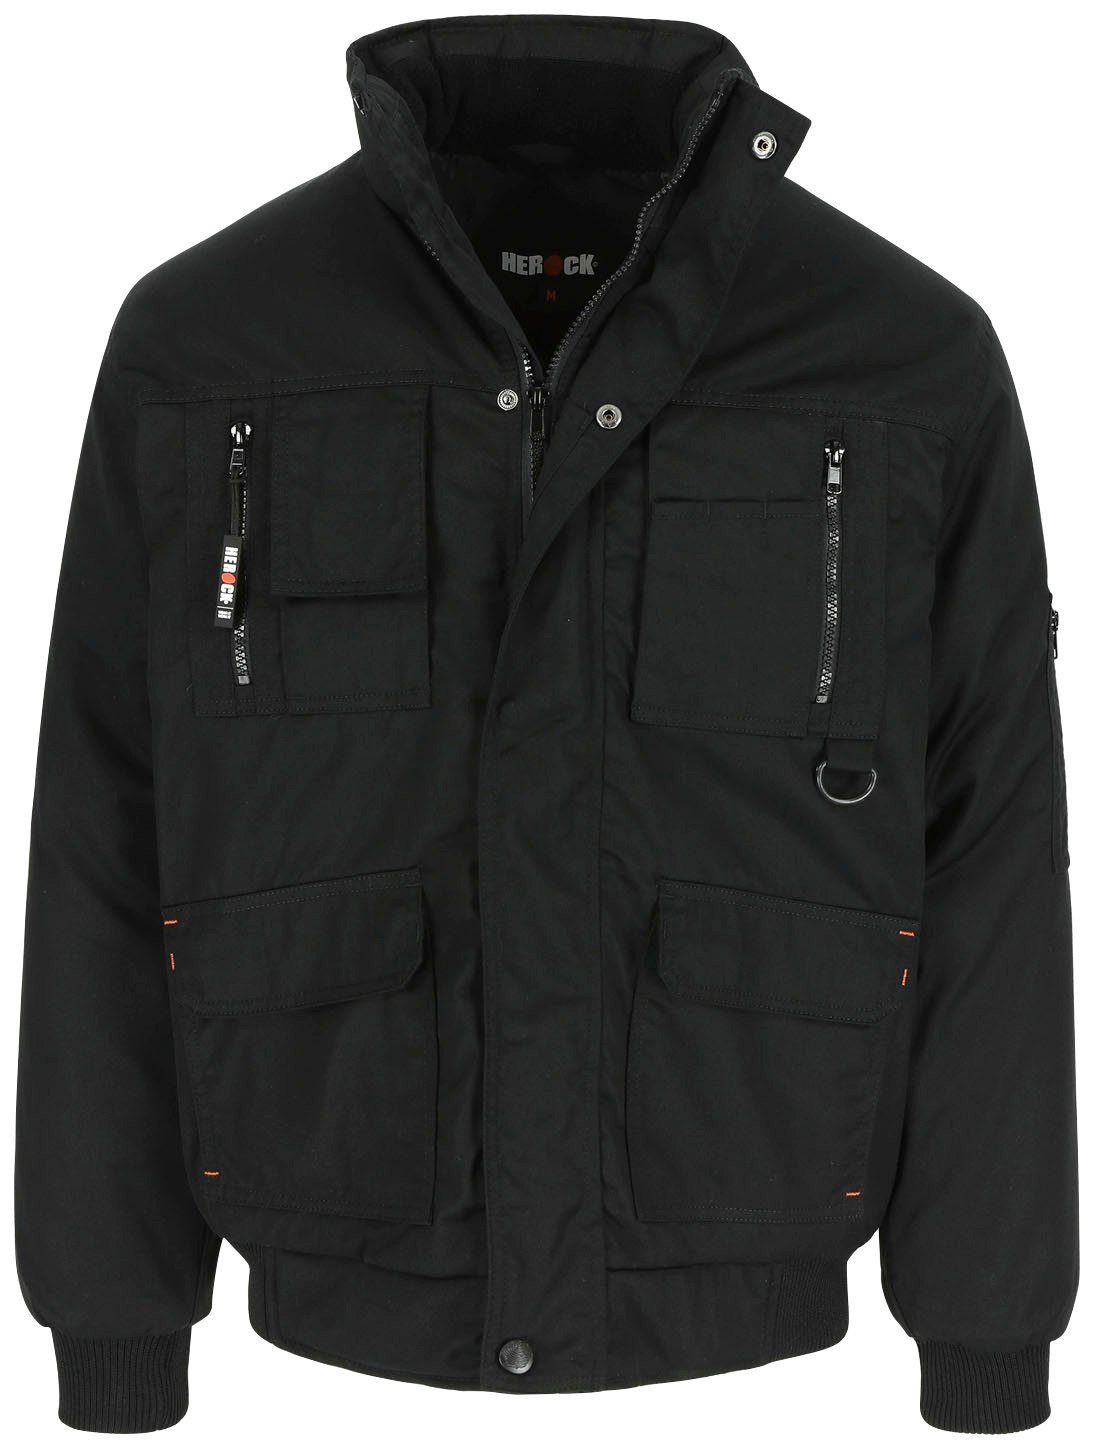 Herock Arbeitsjacke Typhon Jacke Wasserabweisend mit Fleece-Kragen, robust, viele Taschen, viele Farben schwarz | Arbeitsjacken